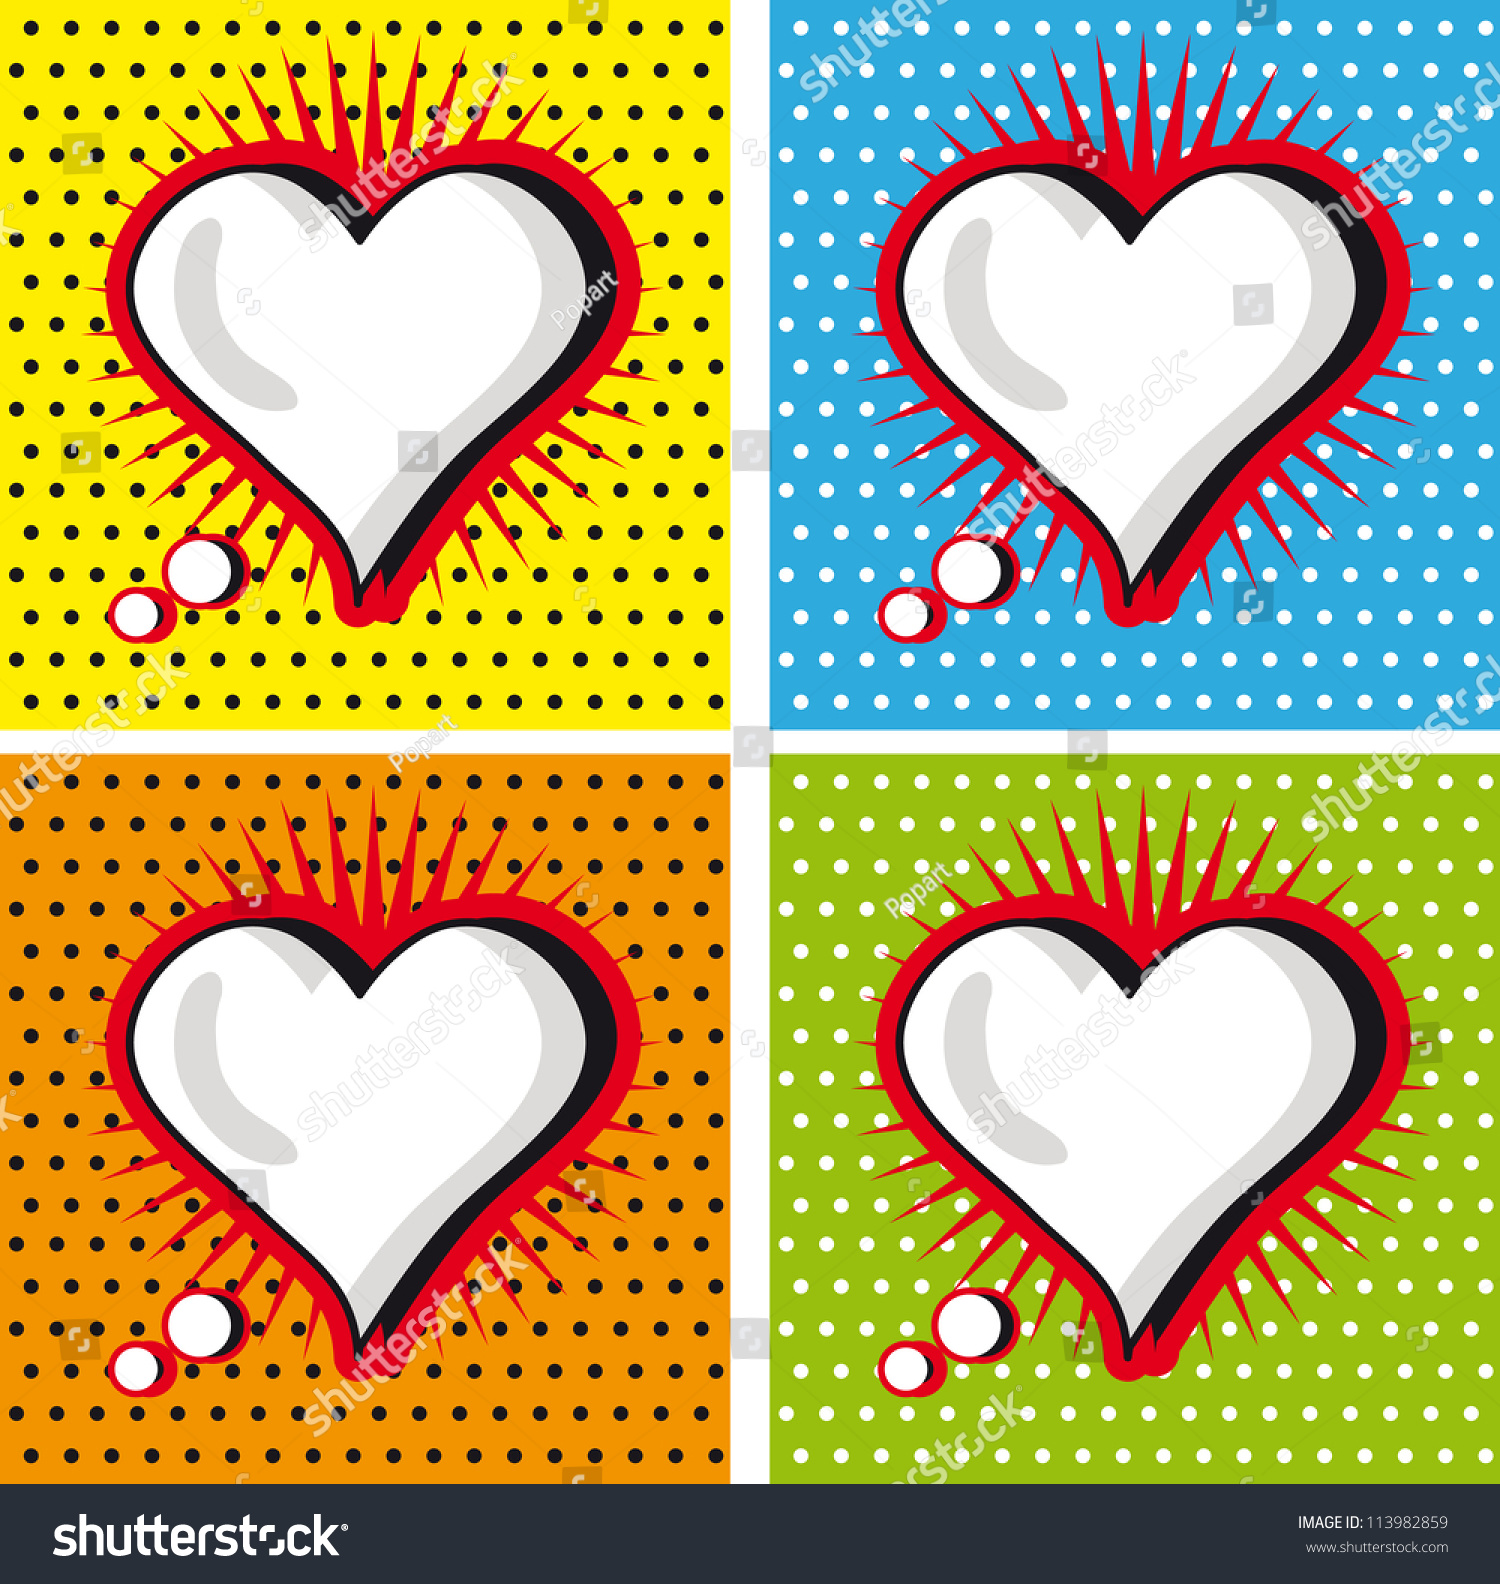 Speech Bubble Love Heart Popart Style Stock Vector 113982859 - Shutterstock